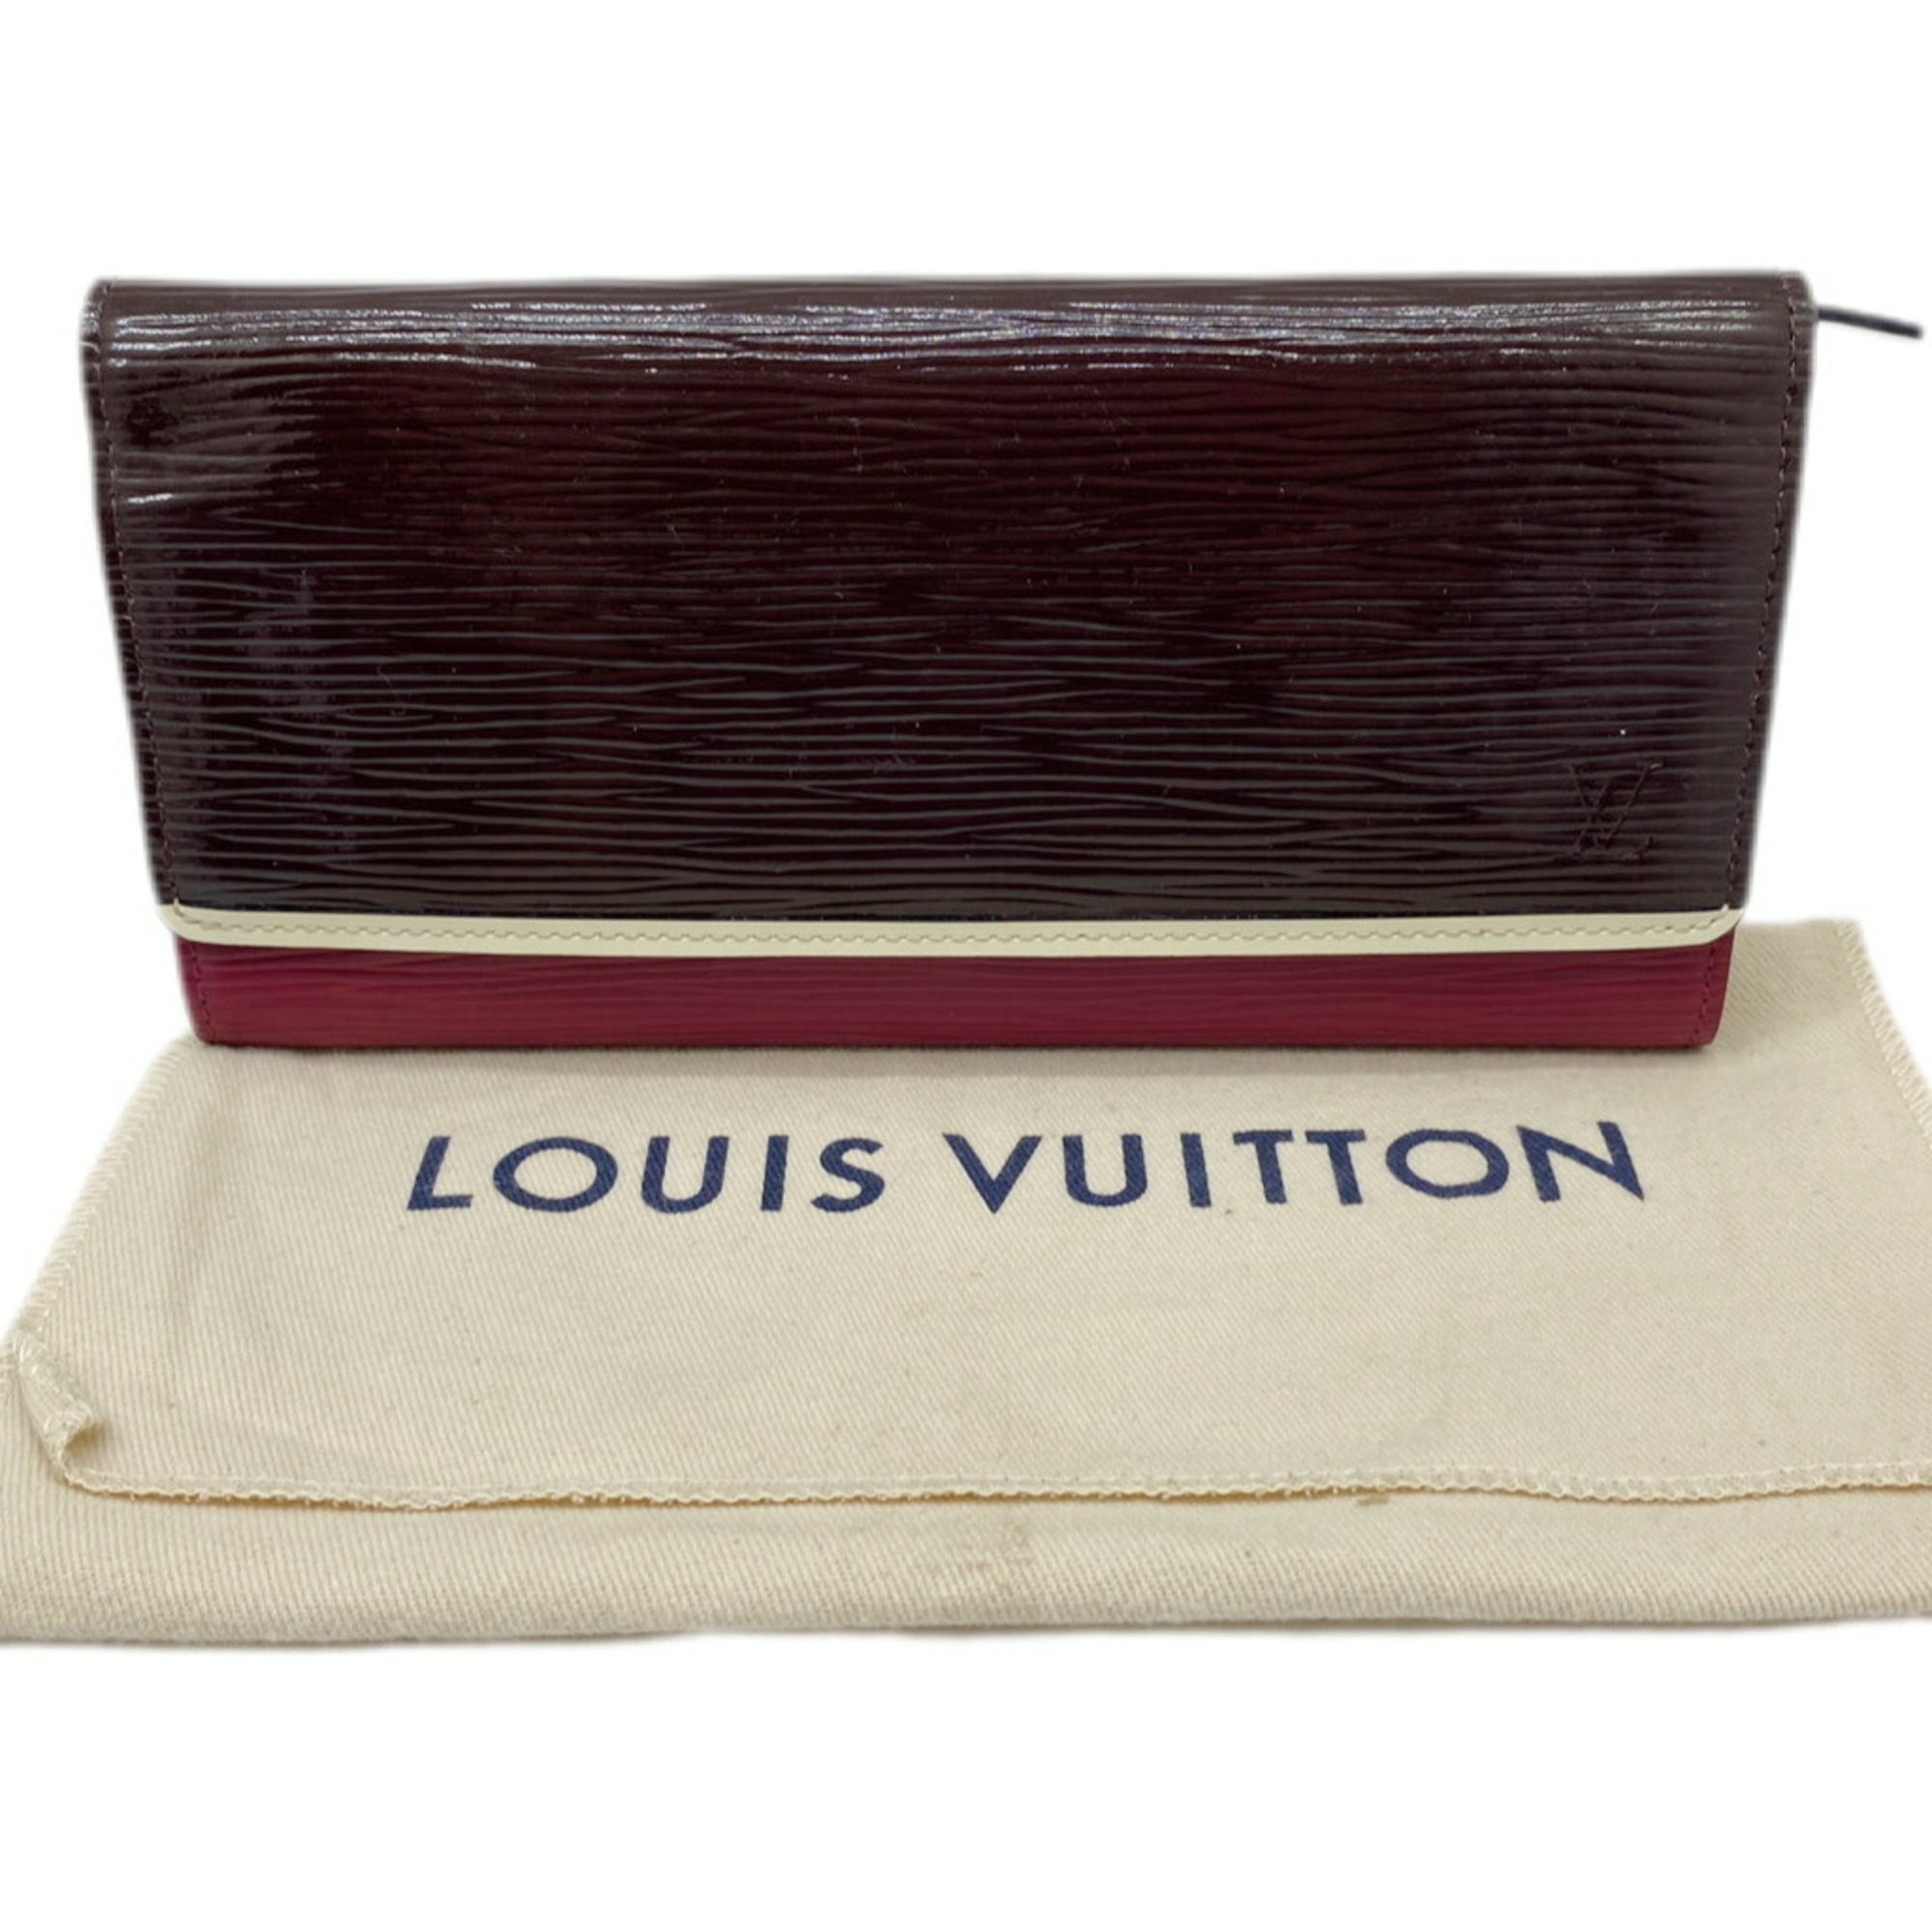 LOUIS VUITTON Louis Vuitton Long Wallet Epi Portefeuille Flore Pruny Electric M60364 Bicolor Women's